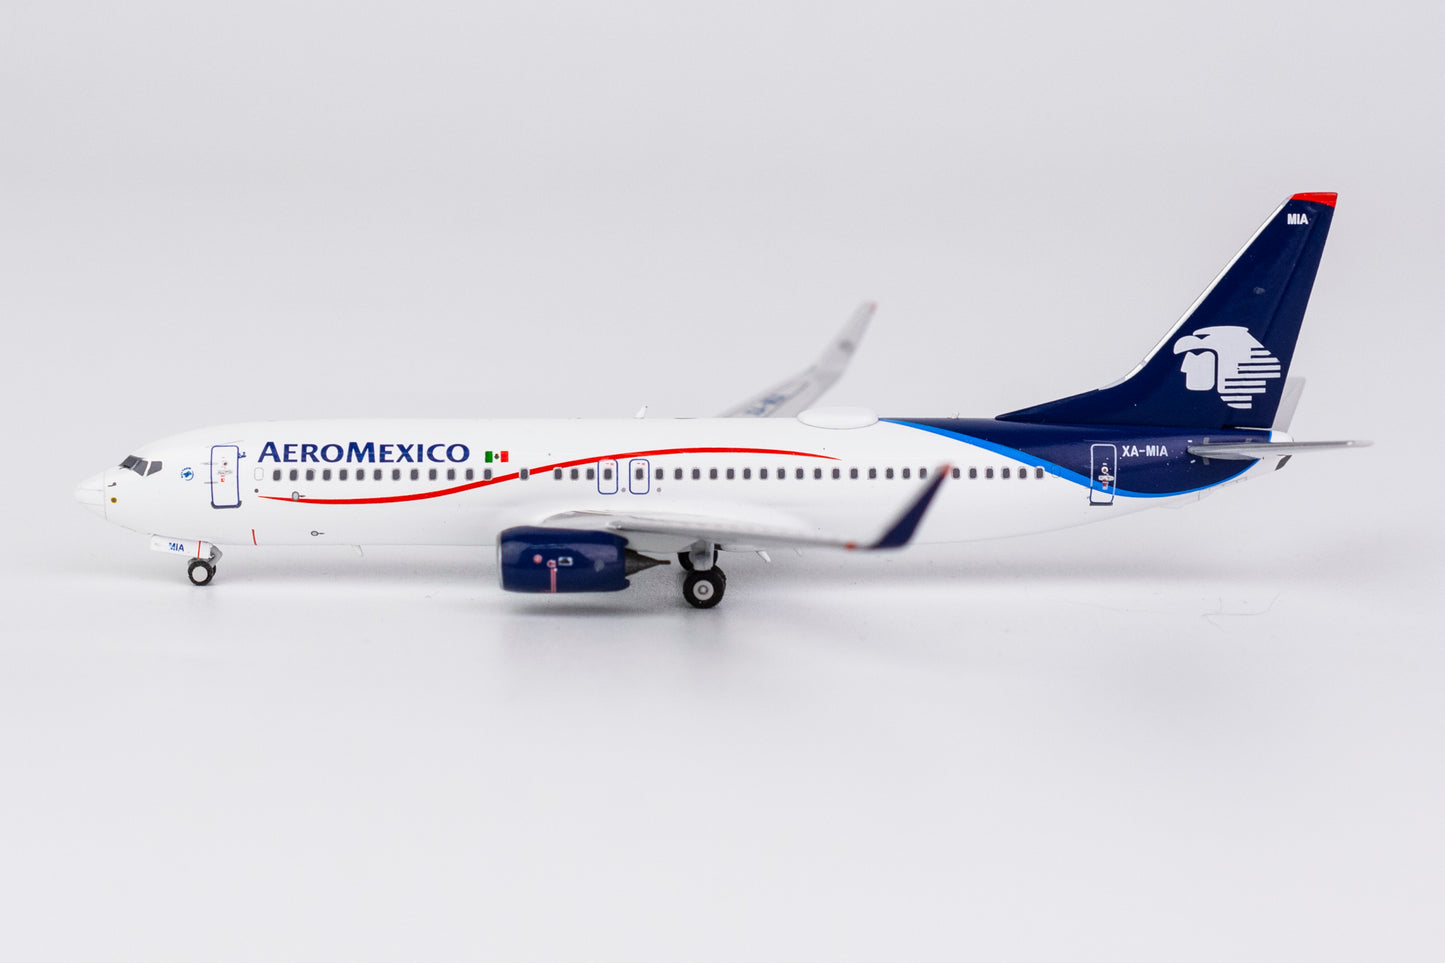 1:400 NG Models Aeroméxico Boeing 737-800 "Blended Winglets" XA-MIA NG58091